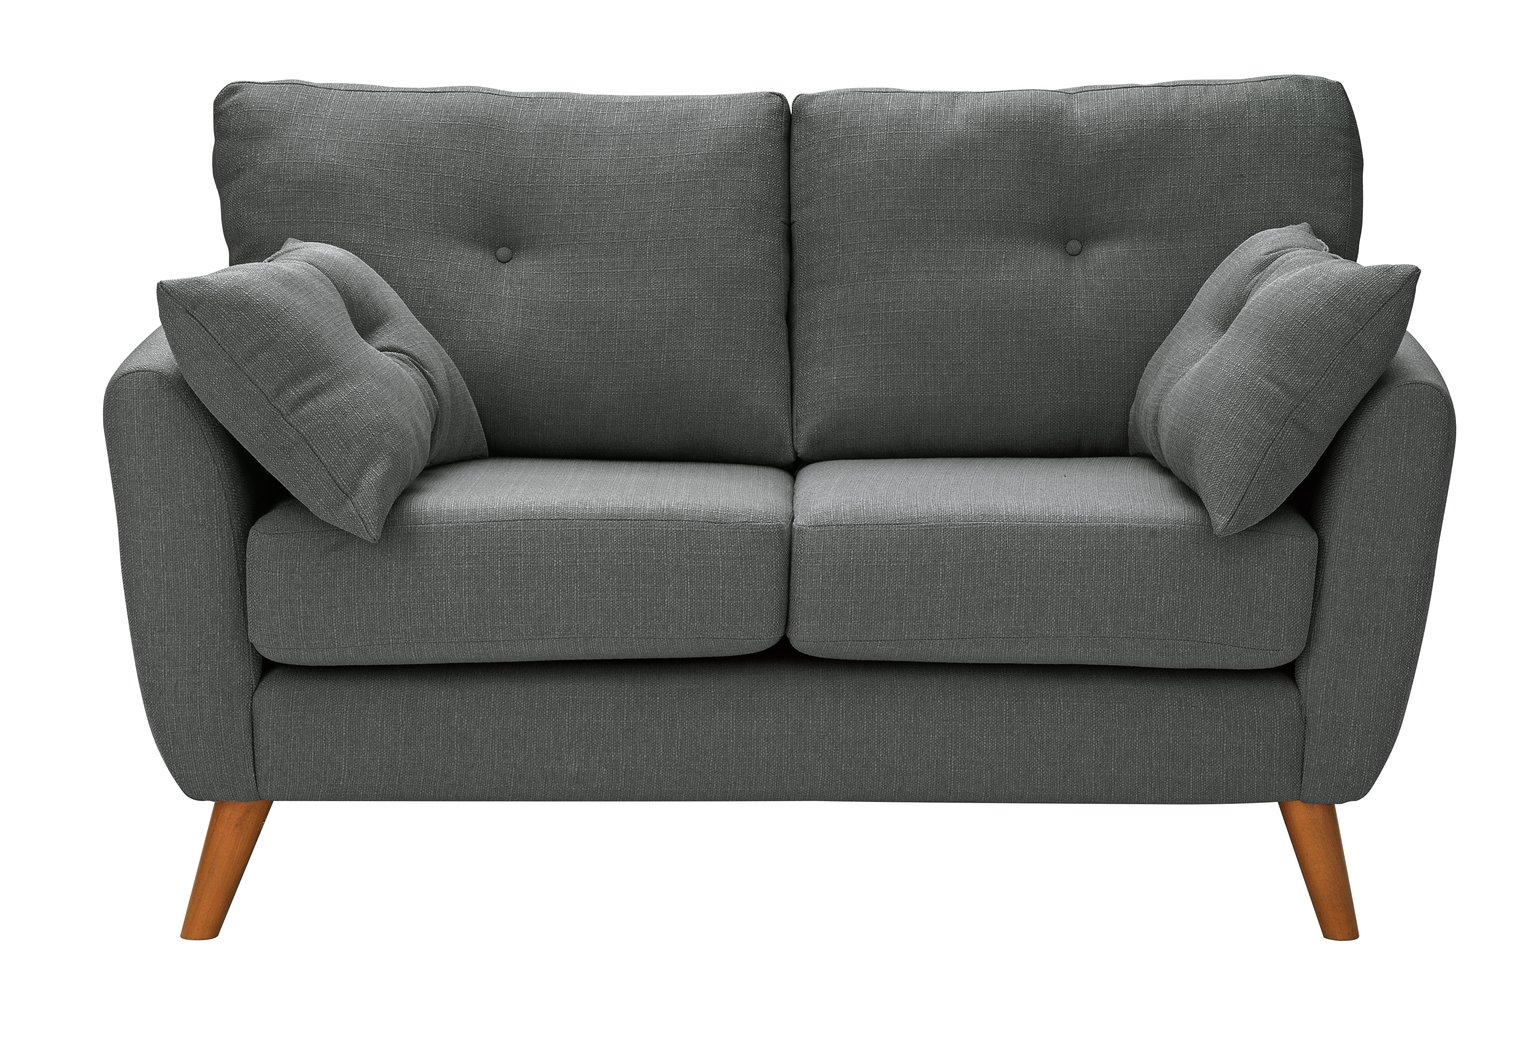 Argos Home Kari 2 Seater Fabric Sofa - Charcoal